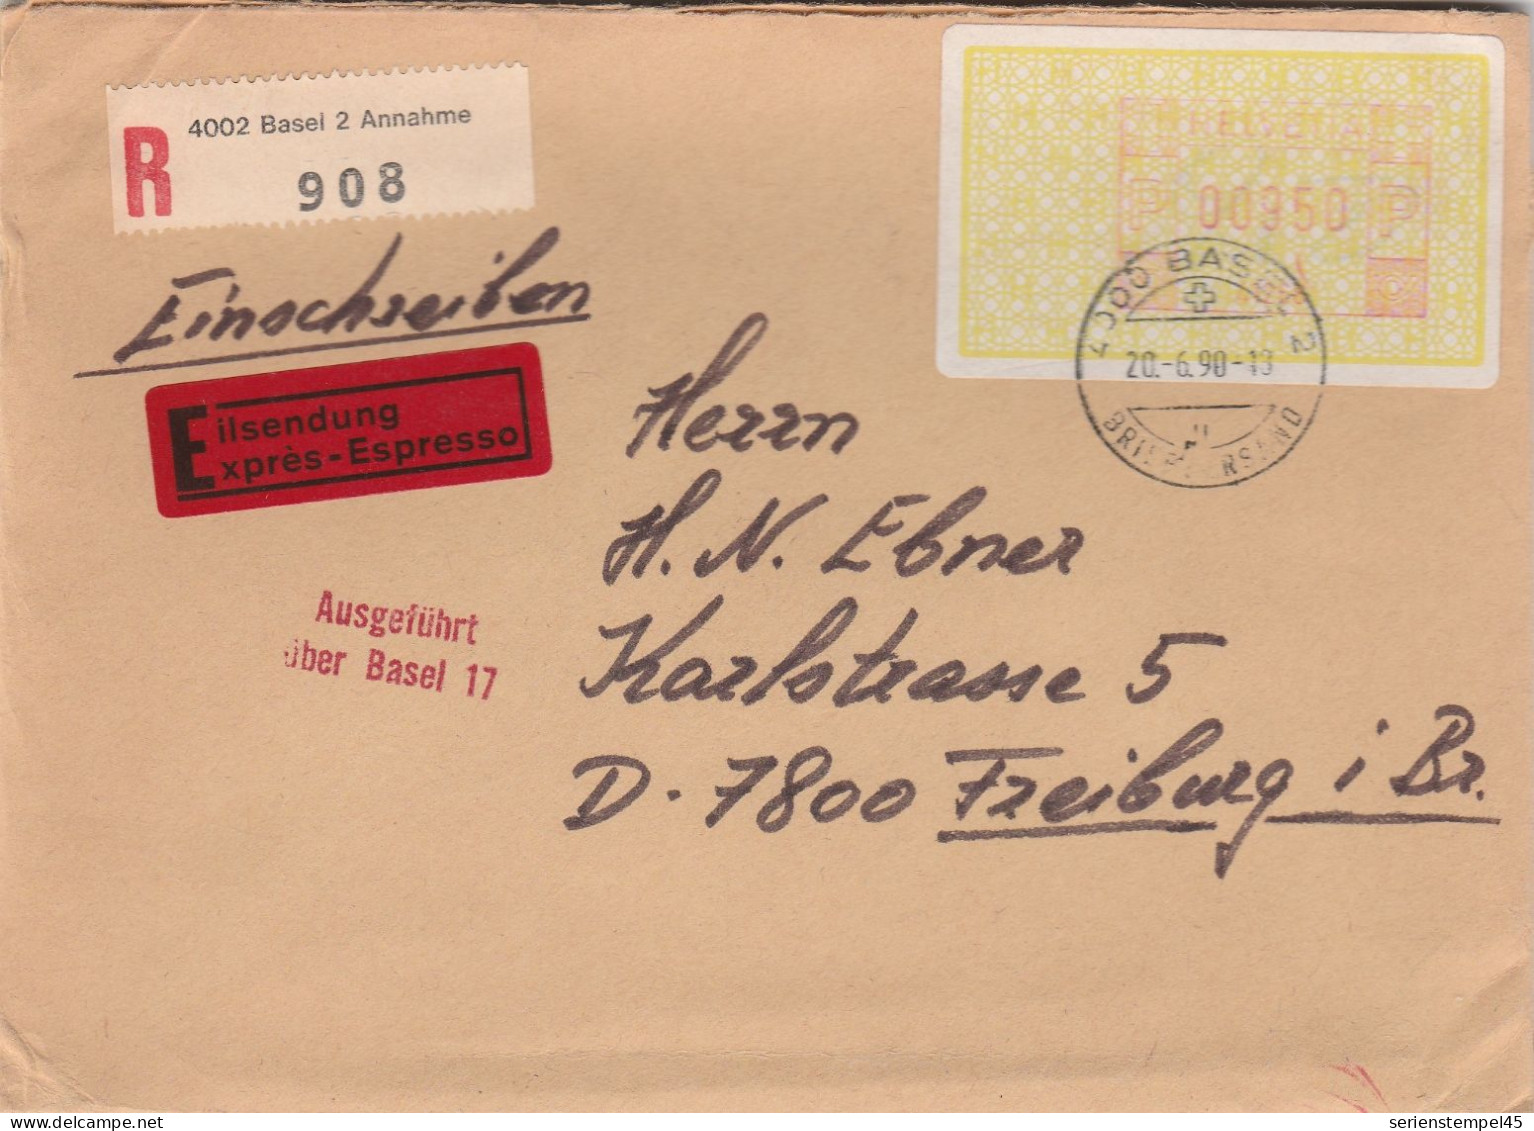 Schweiz Express Einschreiben Brief 4002 Basel 2 Annahme Mit Freistempel 41268 Porto 950 P 1990 - Frankiermaschinen (FraMA)